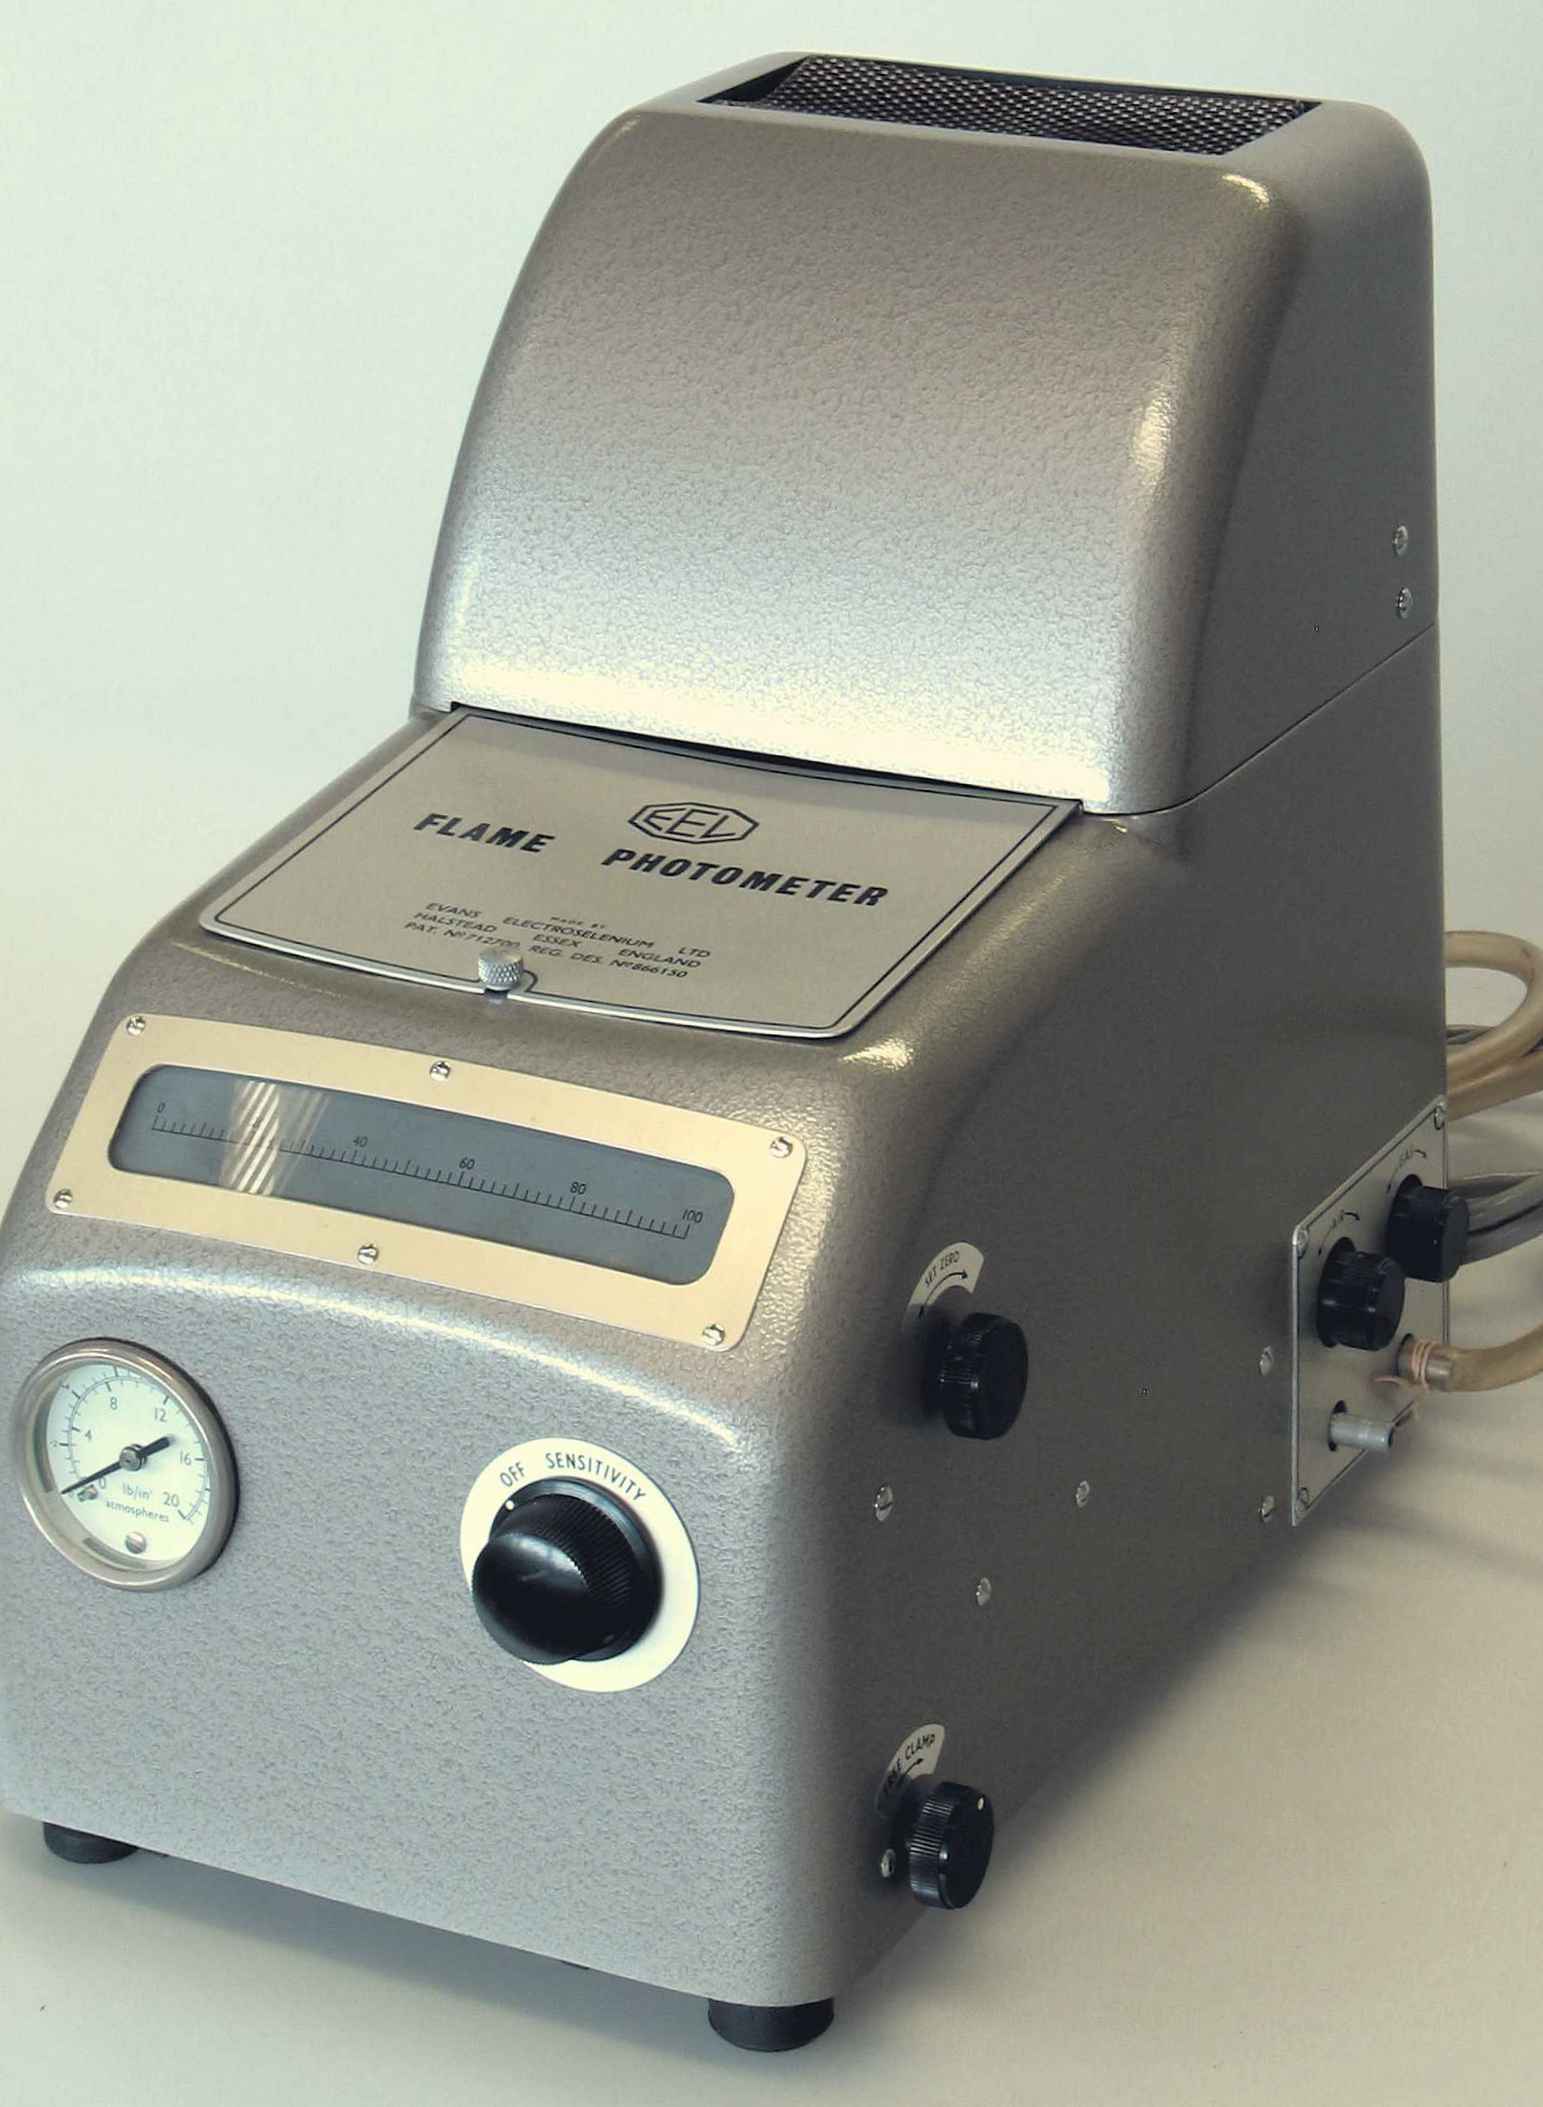 Photomètre de flamme
(“Flame Photometer”)